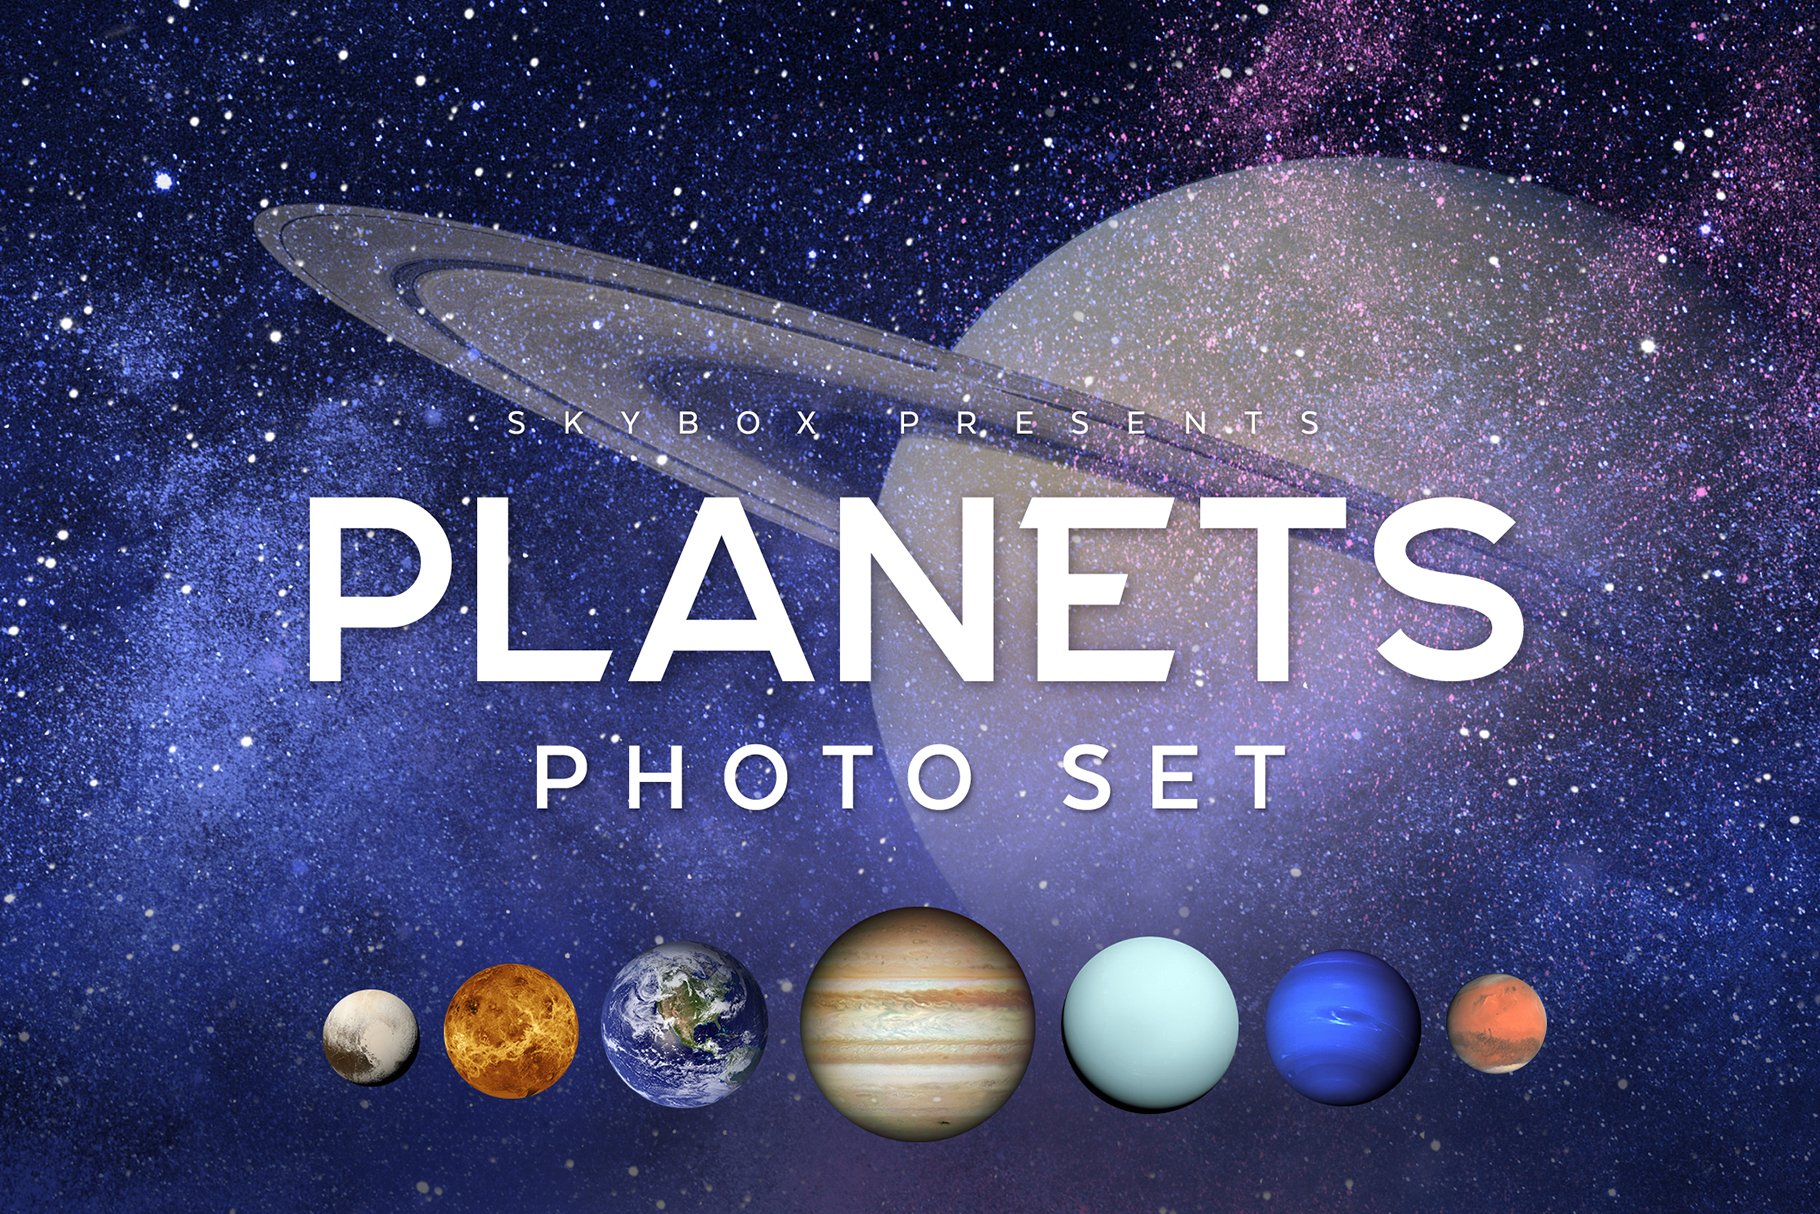 Planets Photo Set